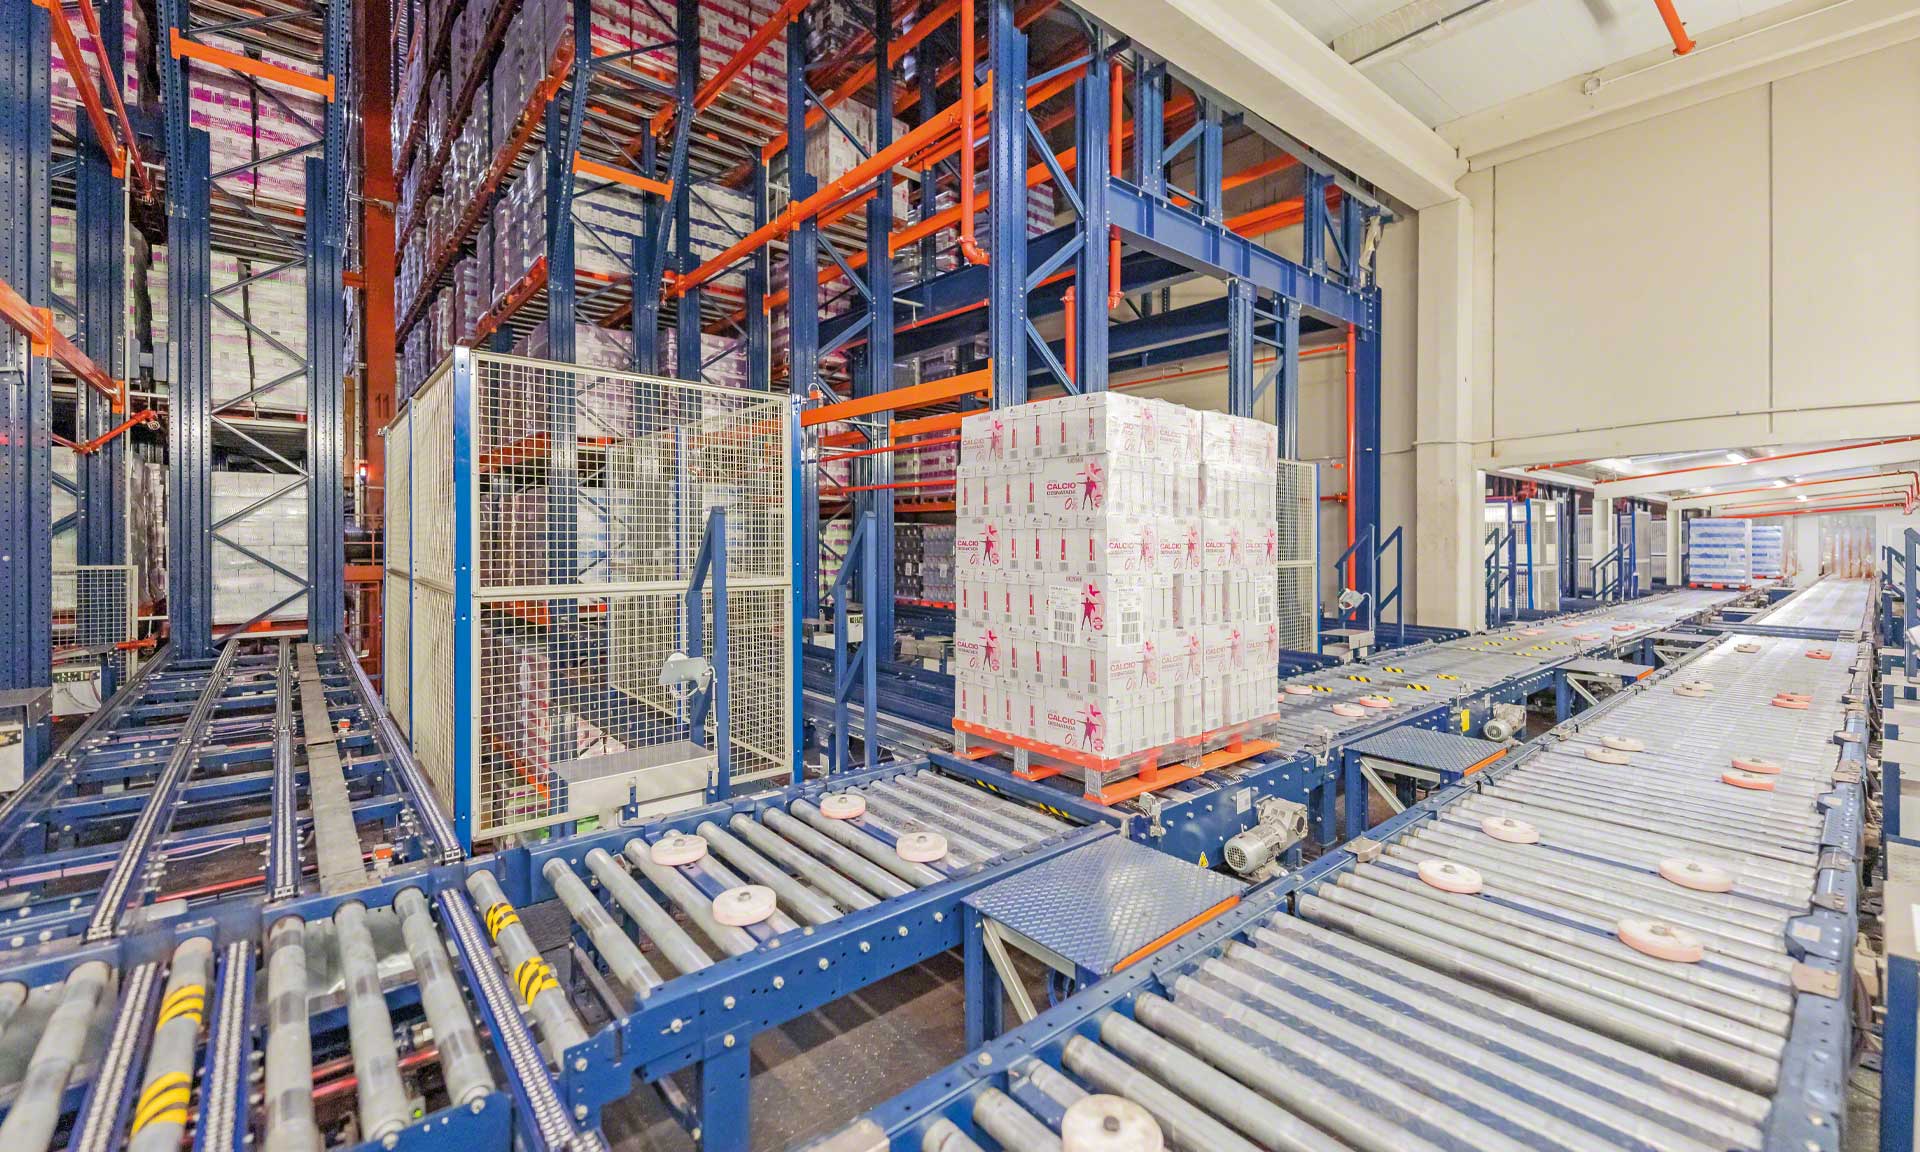 Esnelat automatiza su logística con dos almacenes automáticos para productos lácteos